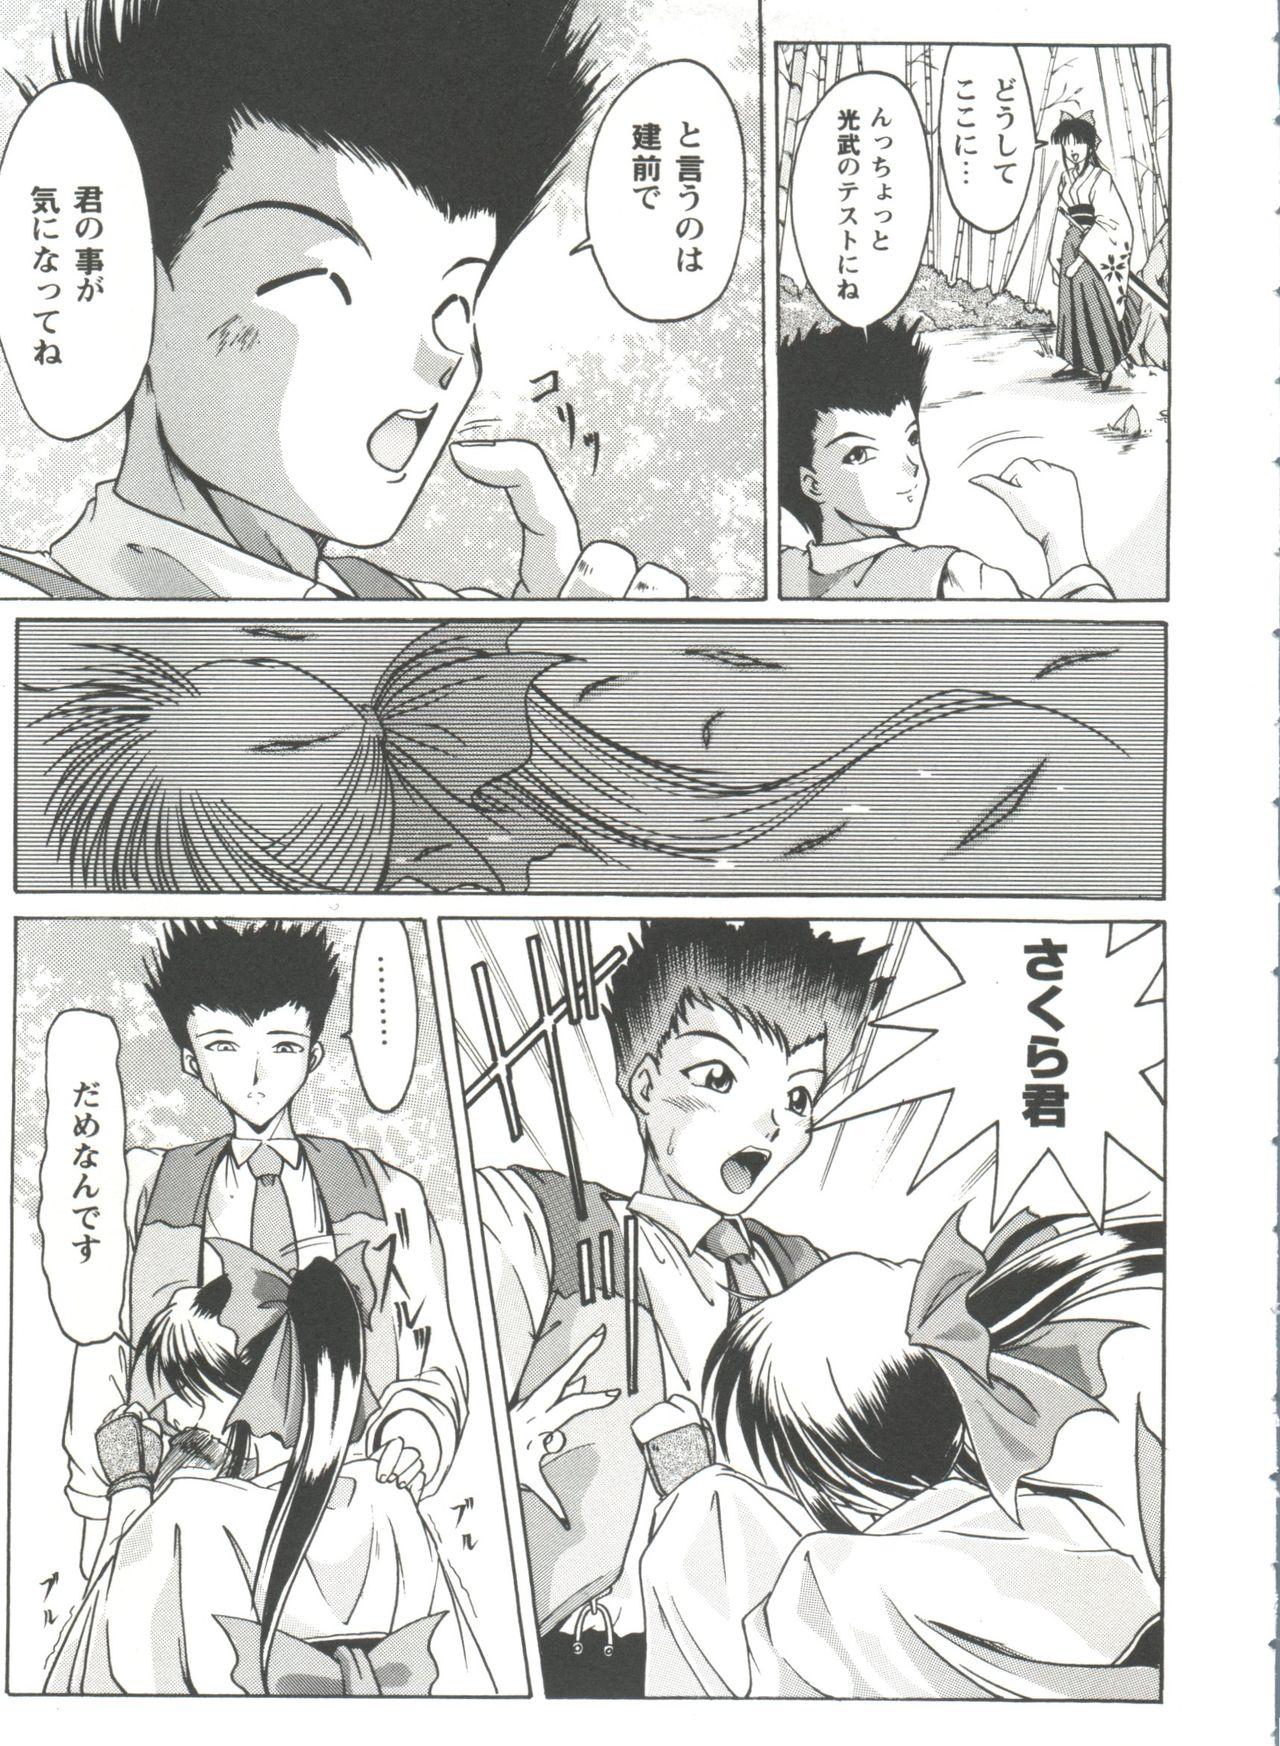 Roludo Girl's Parade Scene 4 - Sakura taisen Martian successor nadesico Slayers Yu yu hakusho Sexo Anal - Page 8